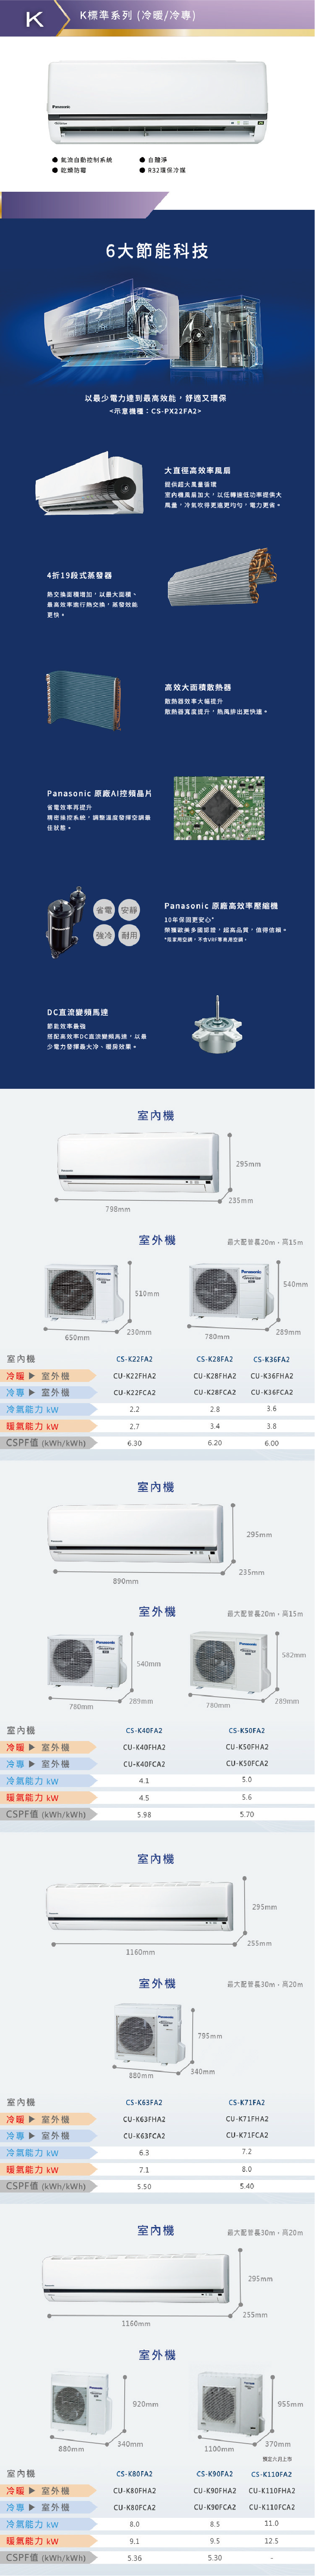 CU-K36FHA2 6坪適用 K系列 一對一 分離式 變頻 冷暖 冷氣 CS-K36FA2